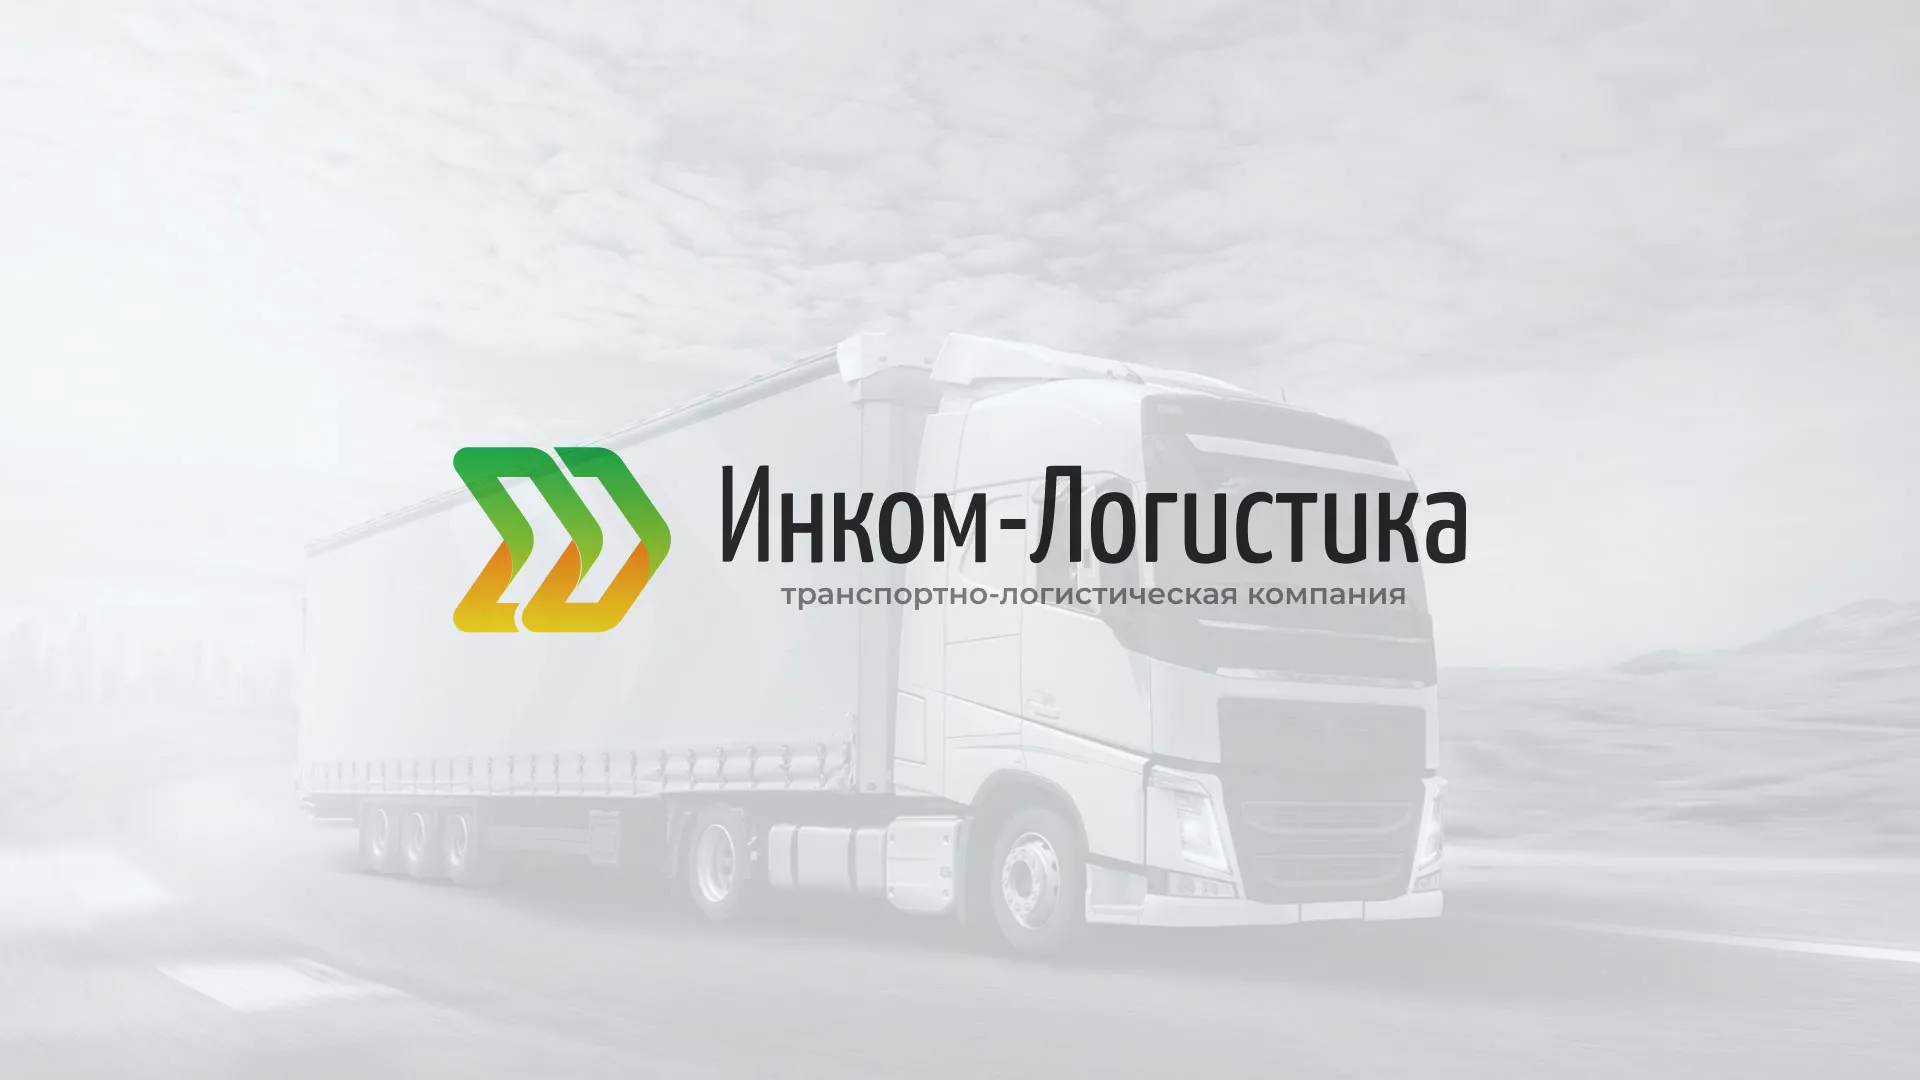 Разработка логотипа и сайта компании «Инком-Логистика» в Первомайске